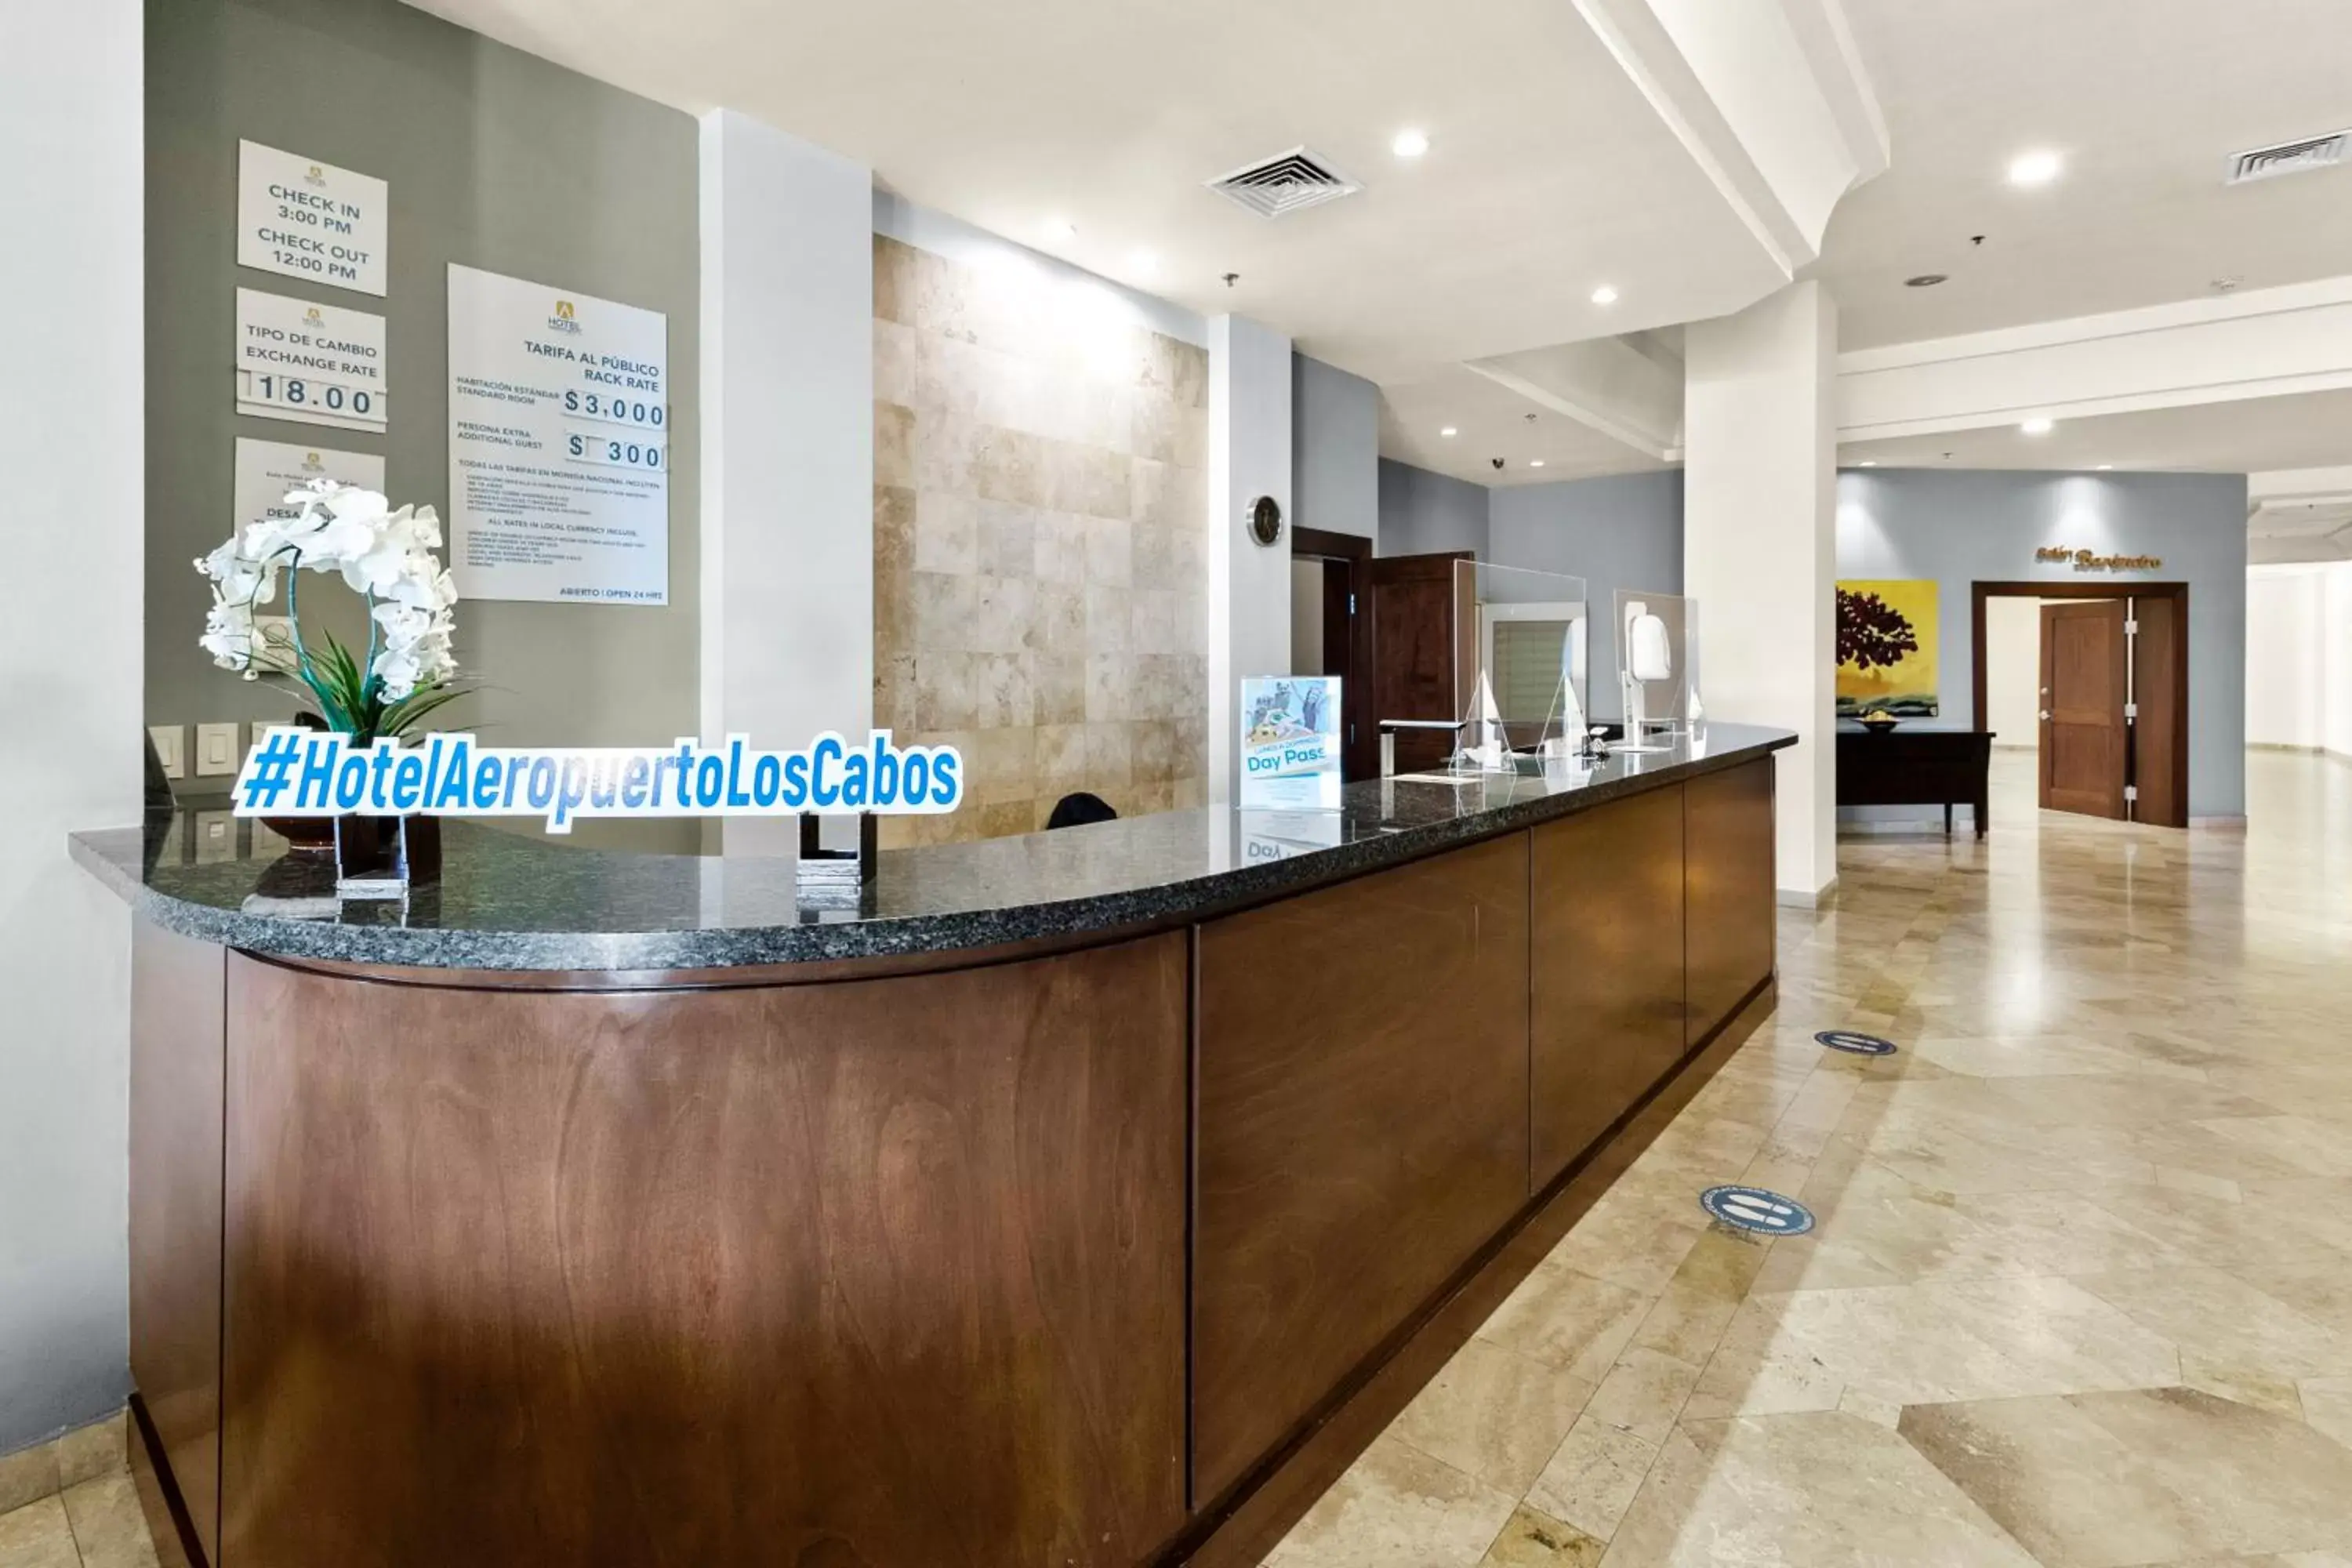 Lobby or reception in Hotel Aeropuerto Los Cabos